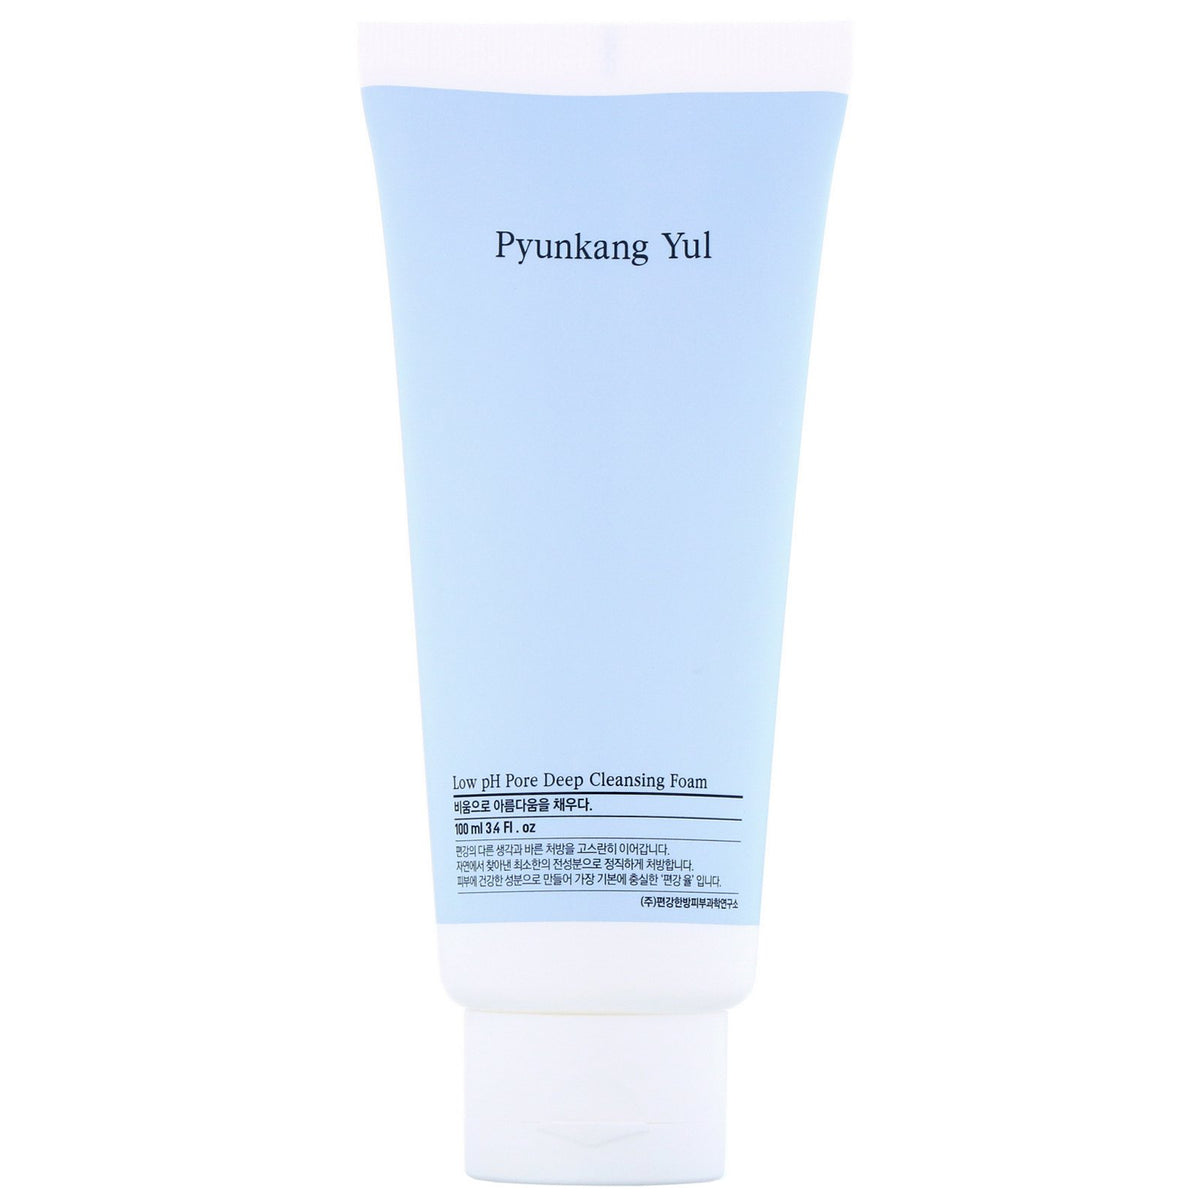 [ Pyunkang Yul ] Low pH Pore Deep Cleansing Foam, 3.4 fl oz (100 ml)